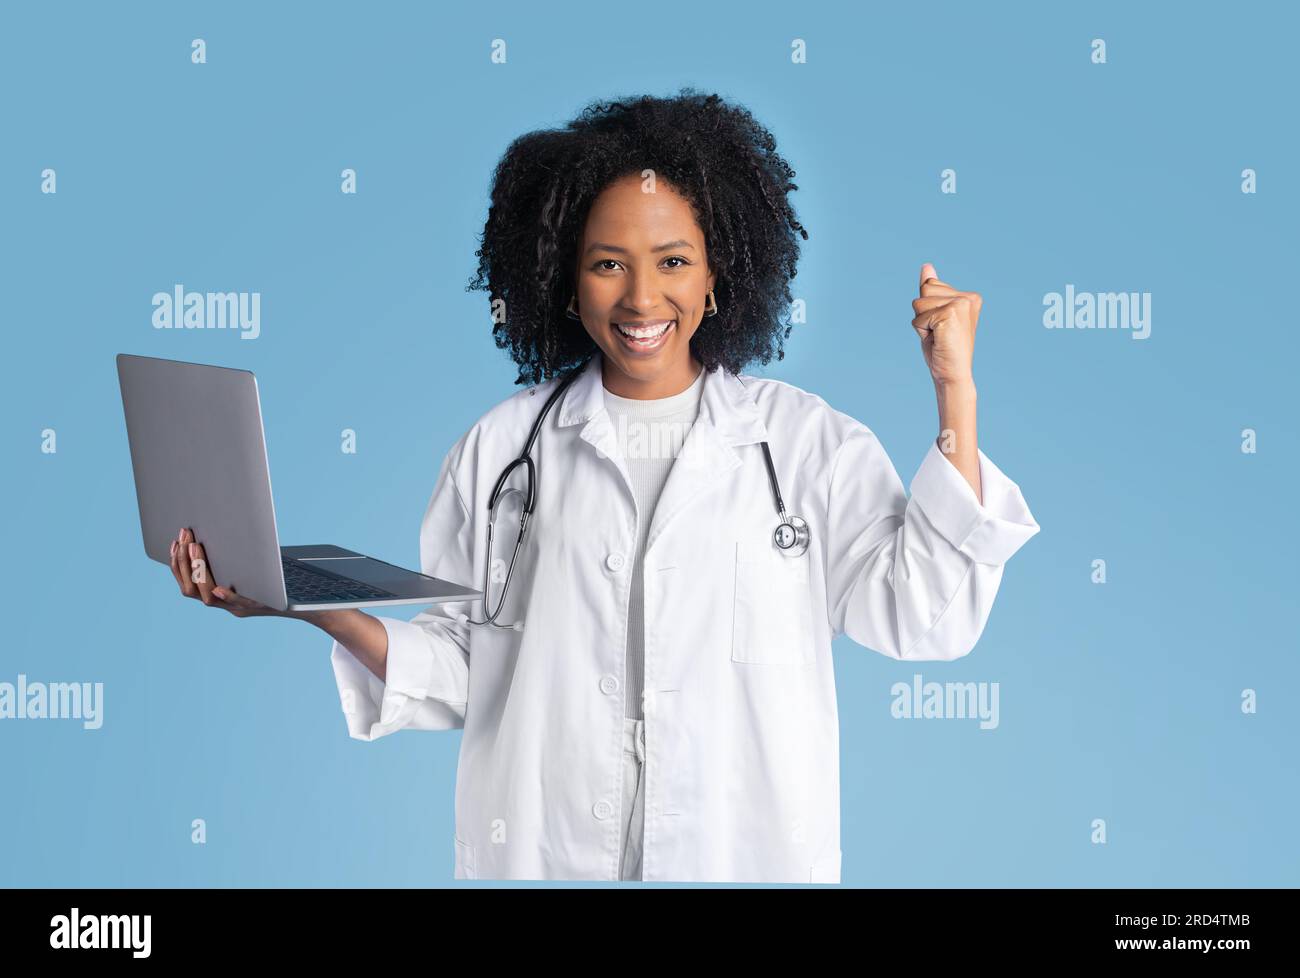 Satisfait jeune femme noire médecin thérapeute en manteau blanc tenir l'ordinateur portable, faisant le geste de main de succès Banque D'Images